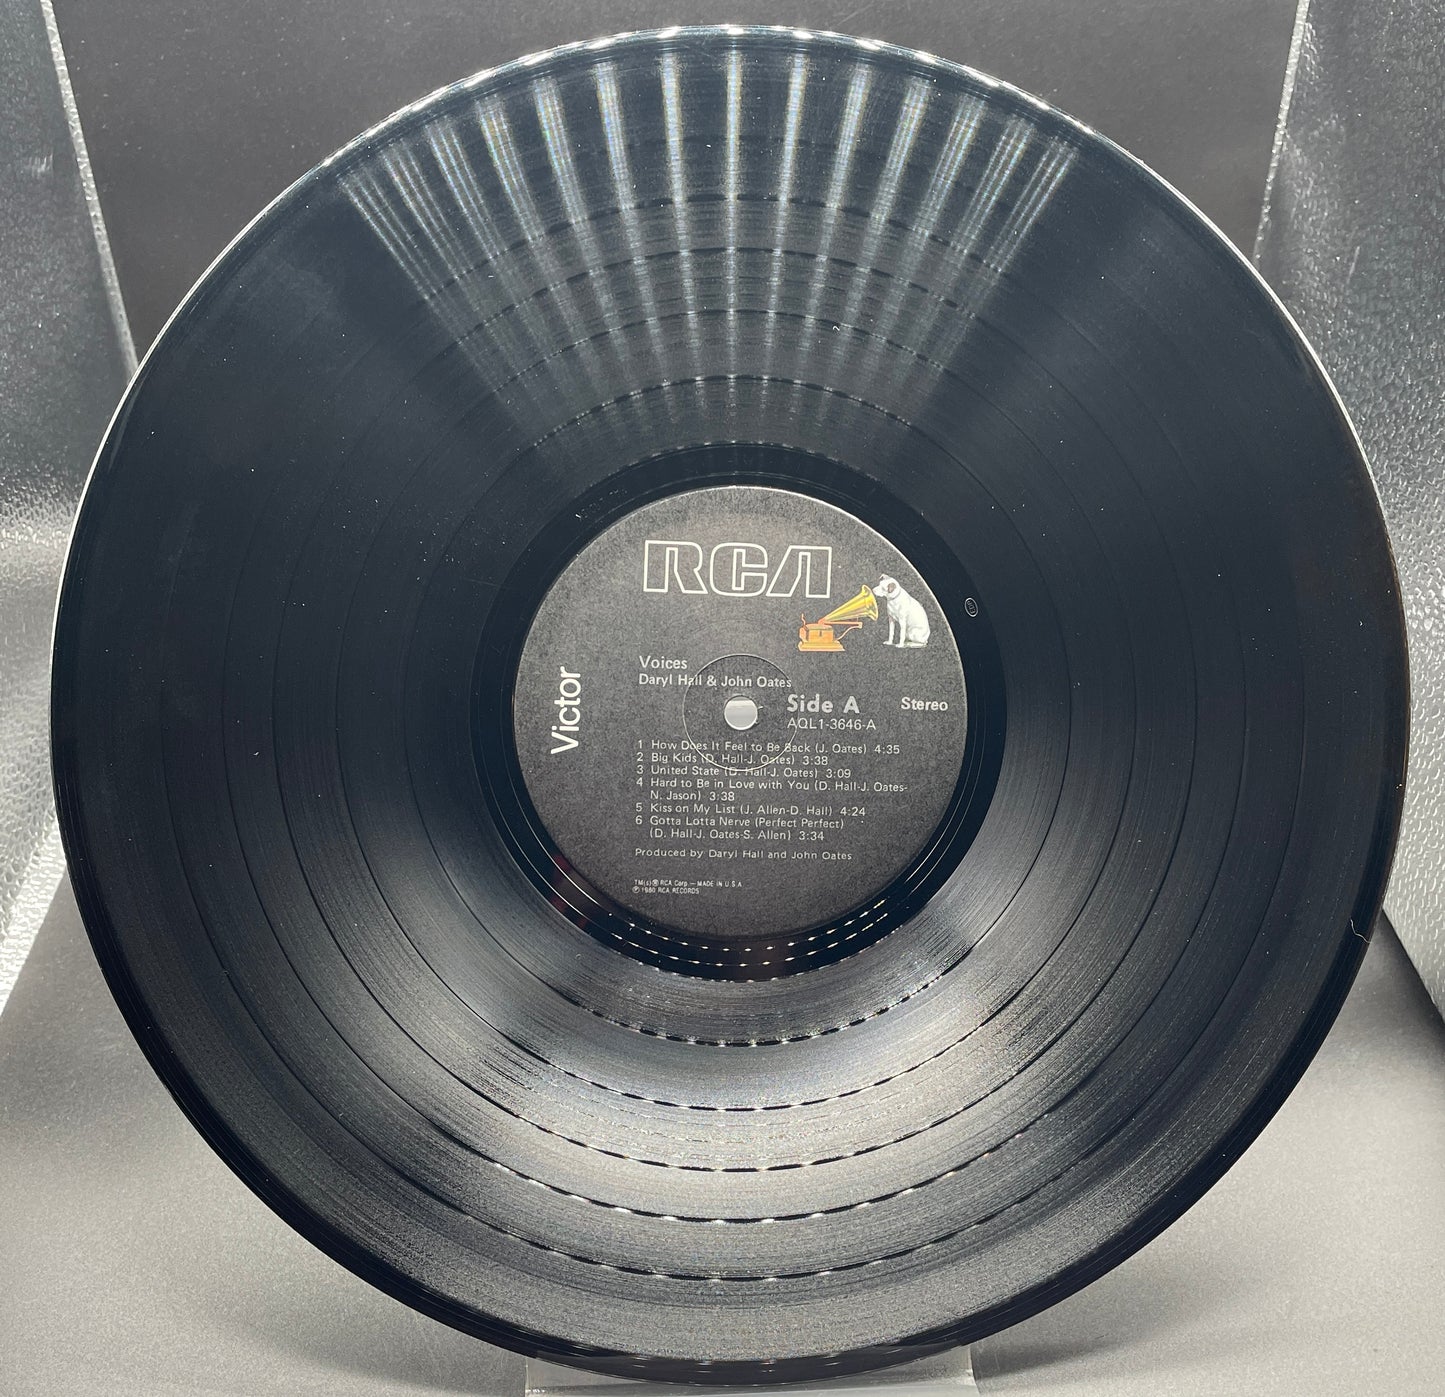 Daryl Hall & John Oates: Voices Vinyl LP